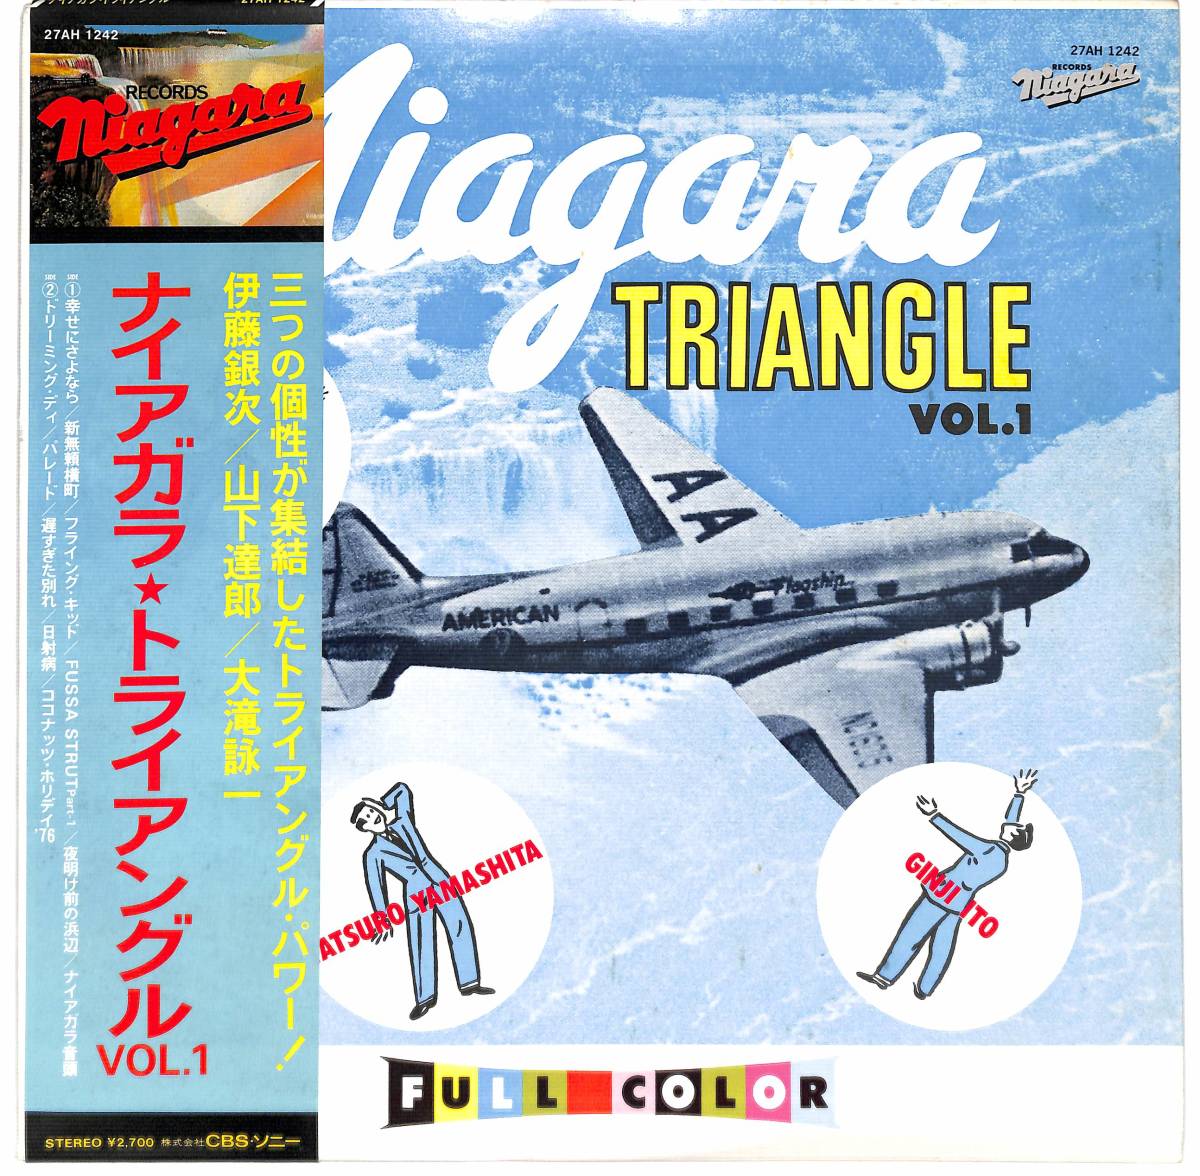 ナイアガラトライアングル Vol.2 82年 オリジナル盤LPレコード